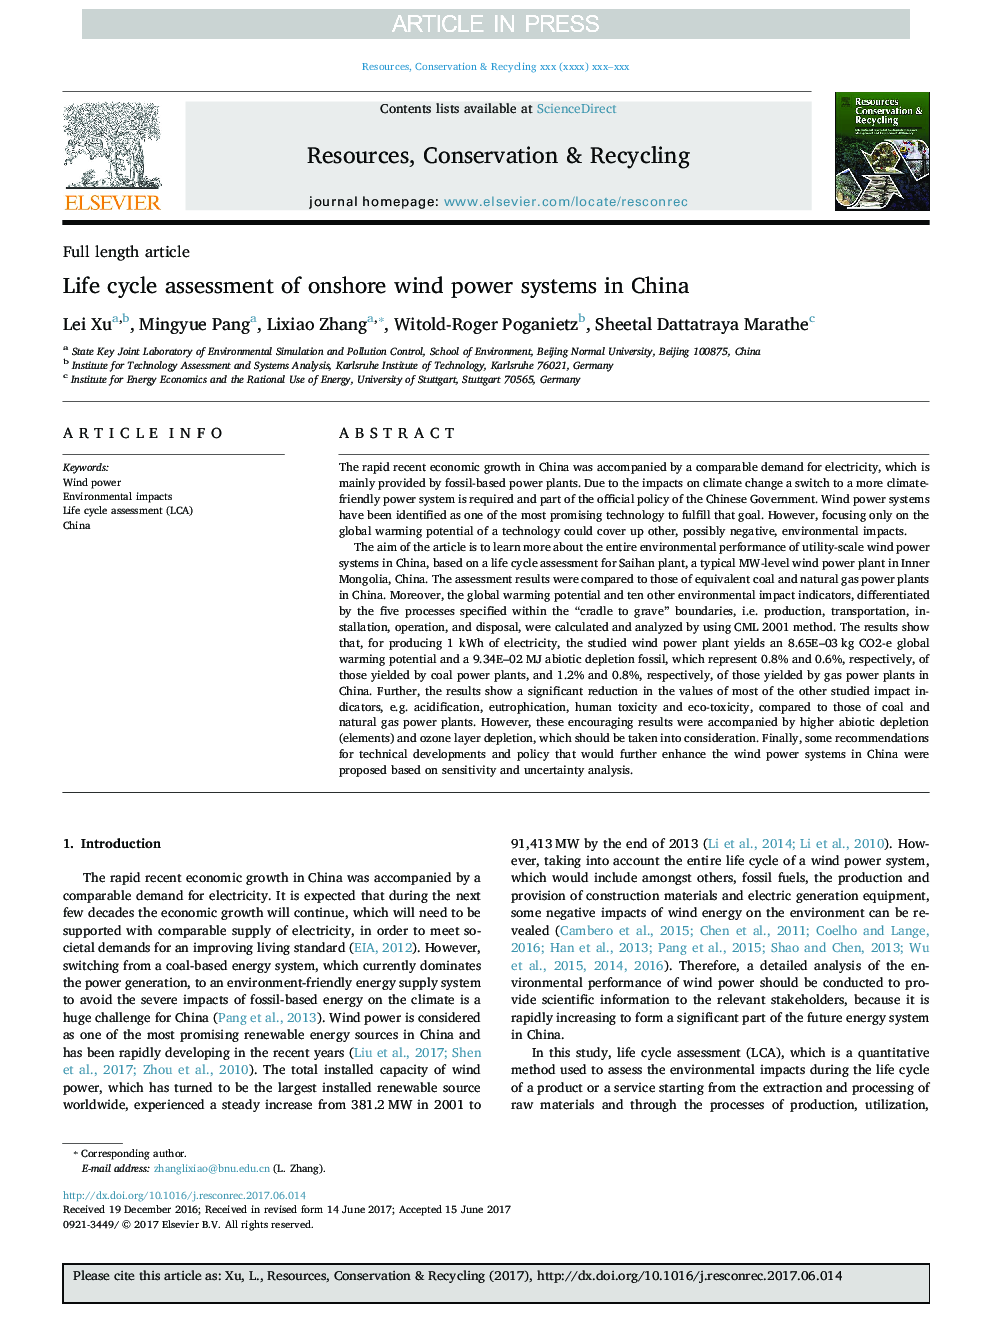 ارزیابی چرخه زندگی سیستم های انرژی باد در دریای خزر در چین 